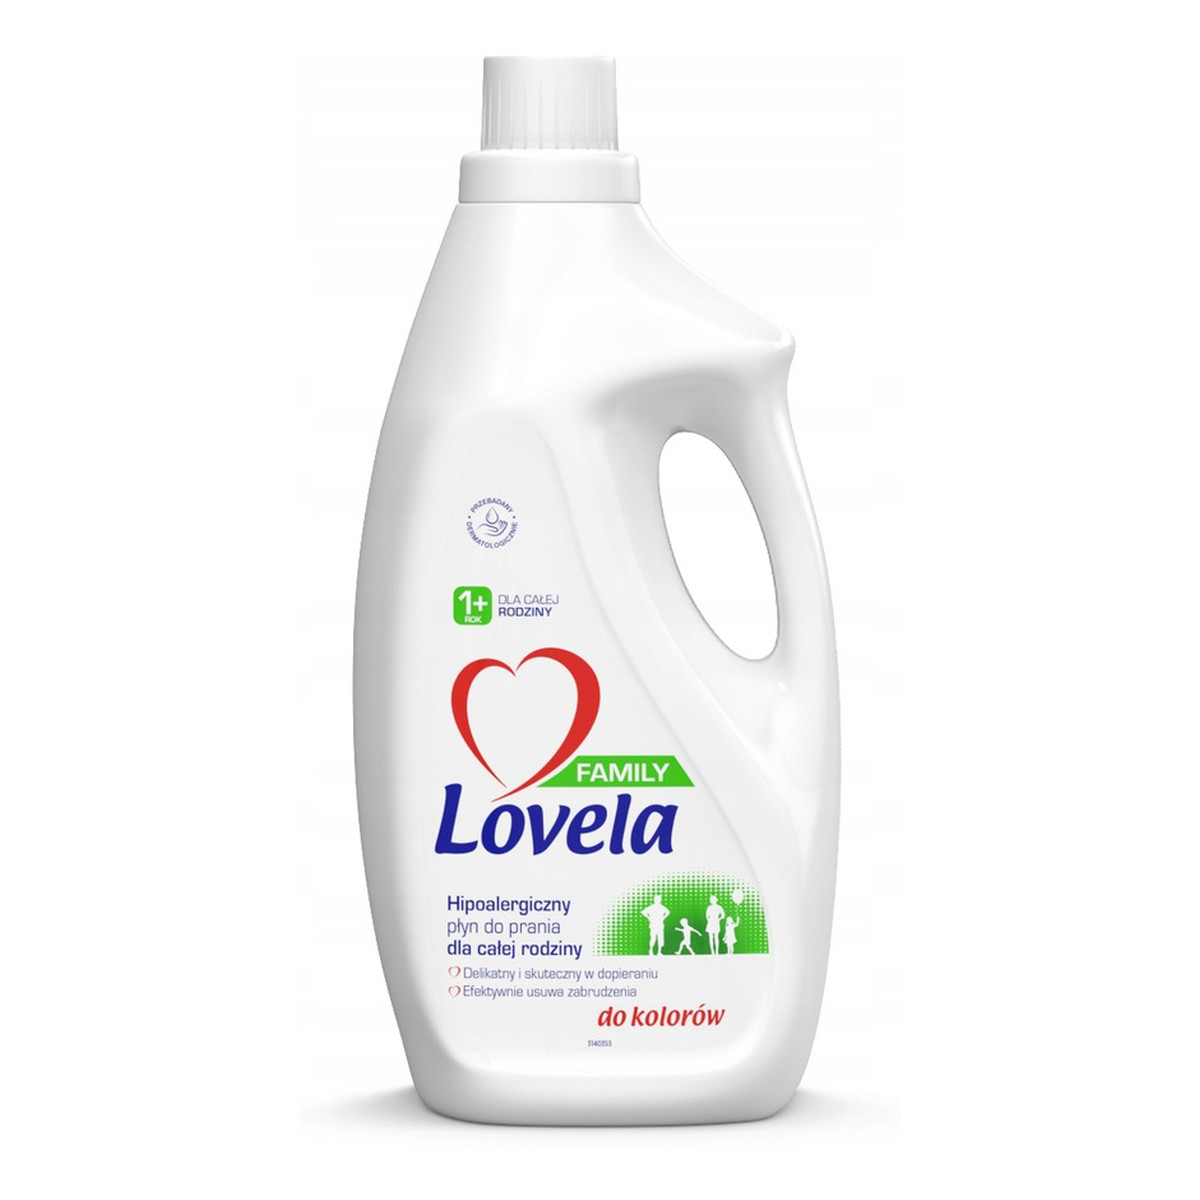 Lovela Family hipoalergiczny płyn do prania dla całej rodziny do kolorów 1.85l 1850ml